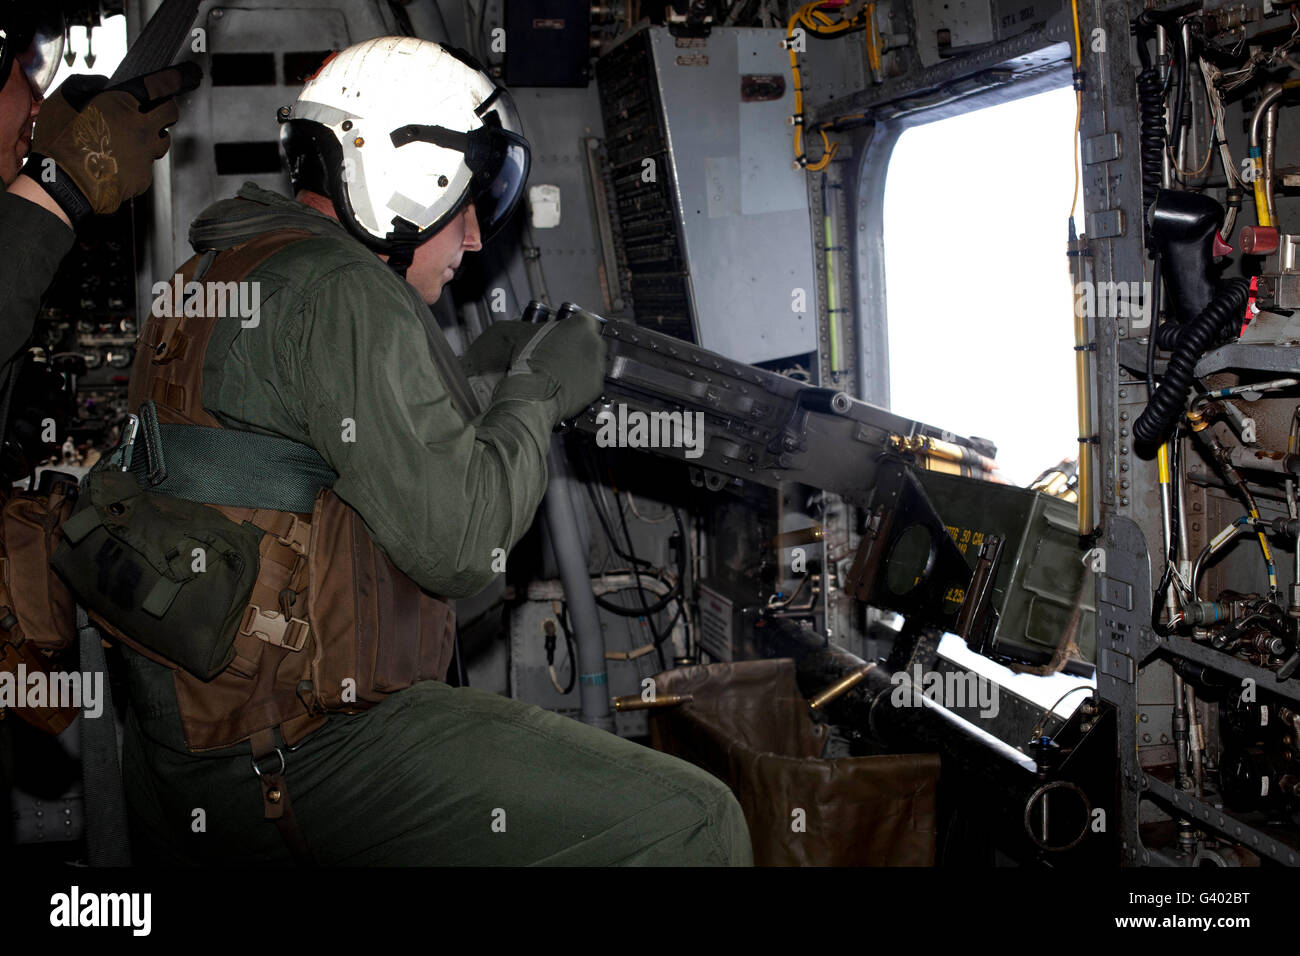 Jefe de la tripulación desencadena un M2 calibre .50 ametralladora pesada del tipo CH-53E Super Stallion. Foto de stock